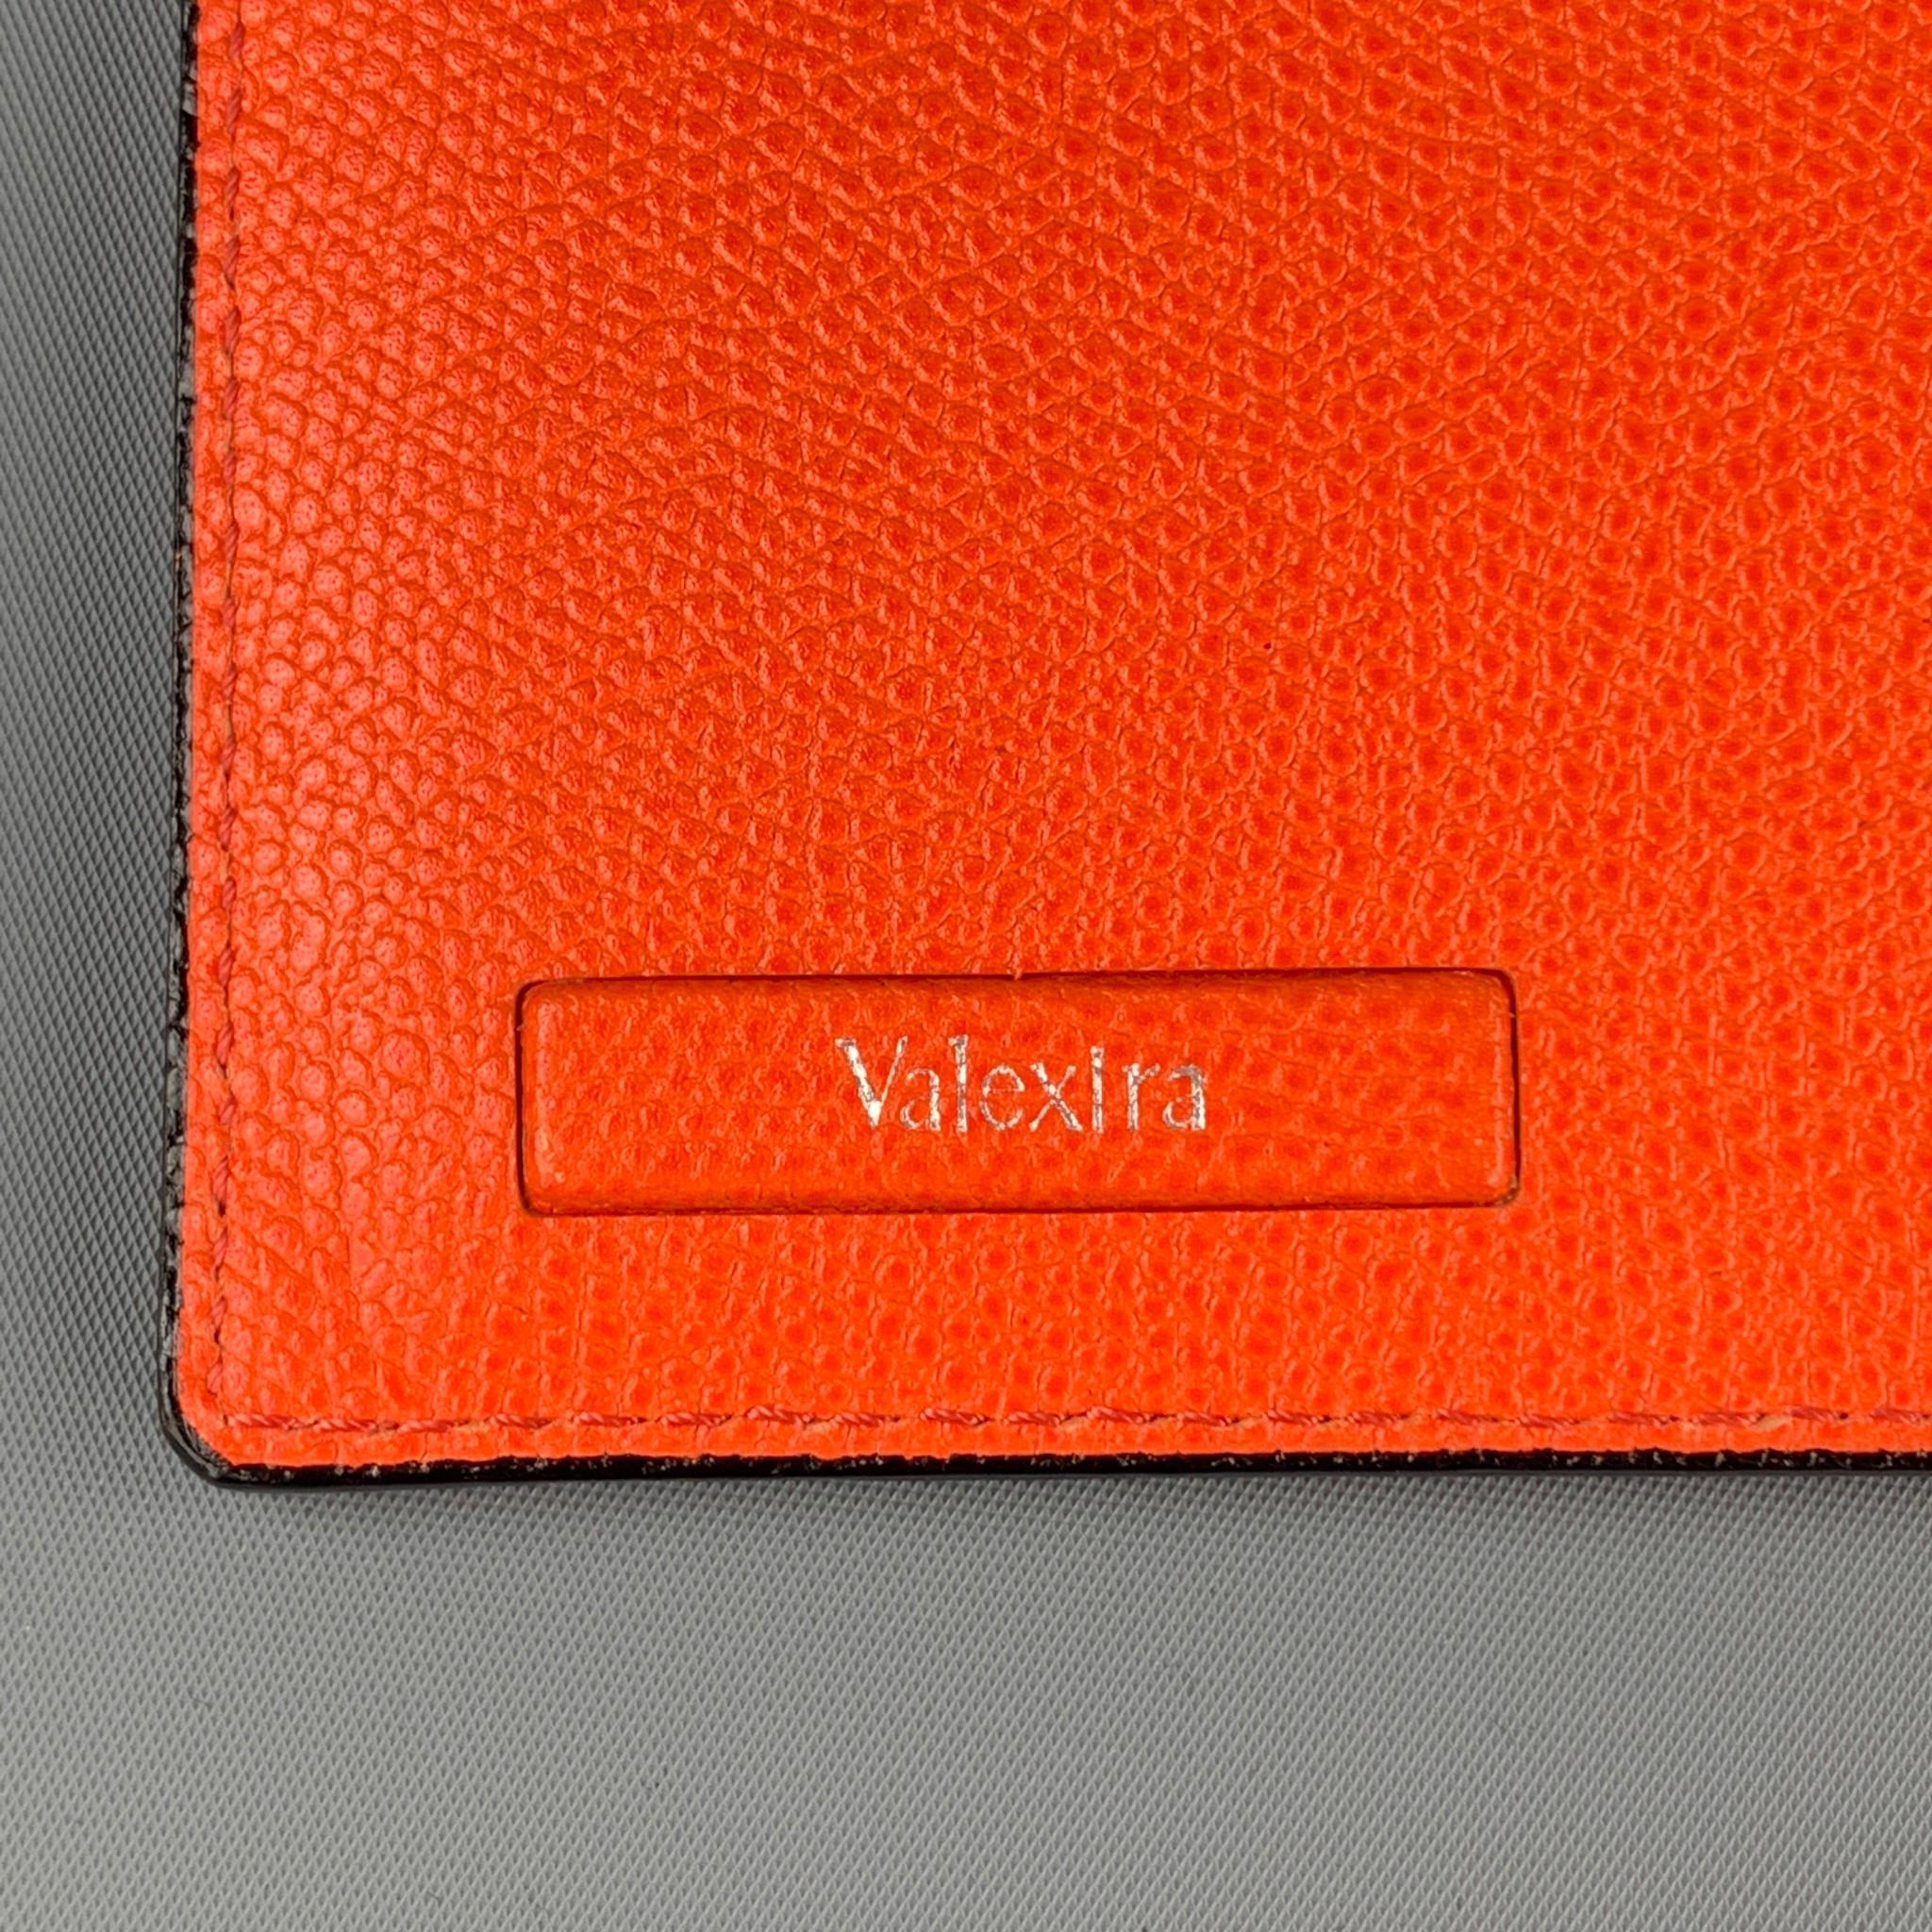 orange ipad case